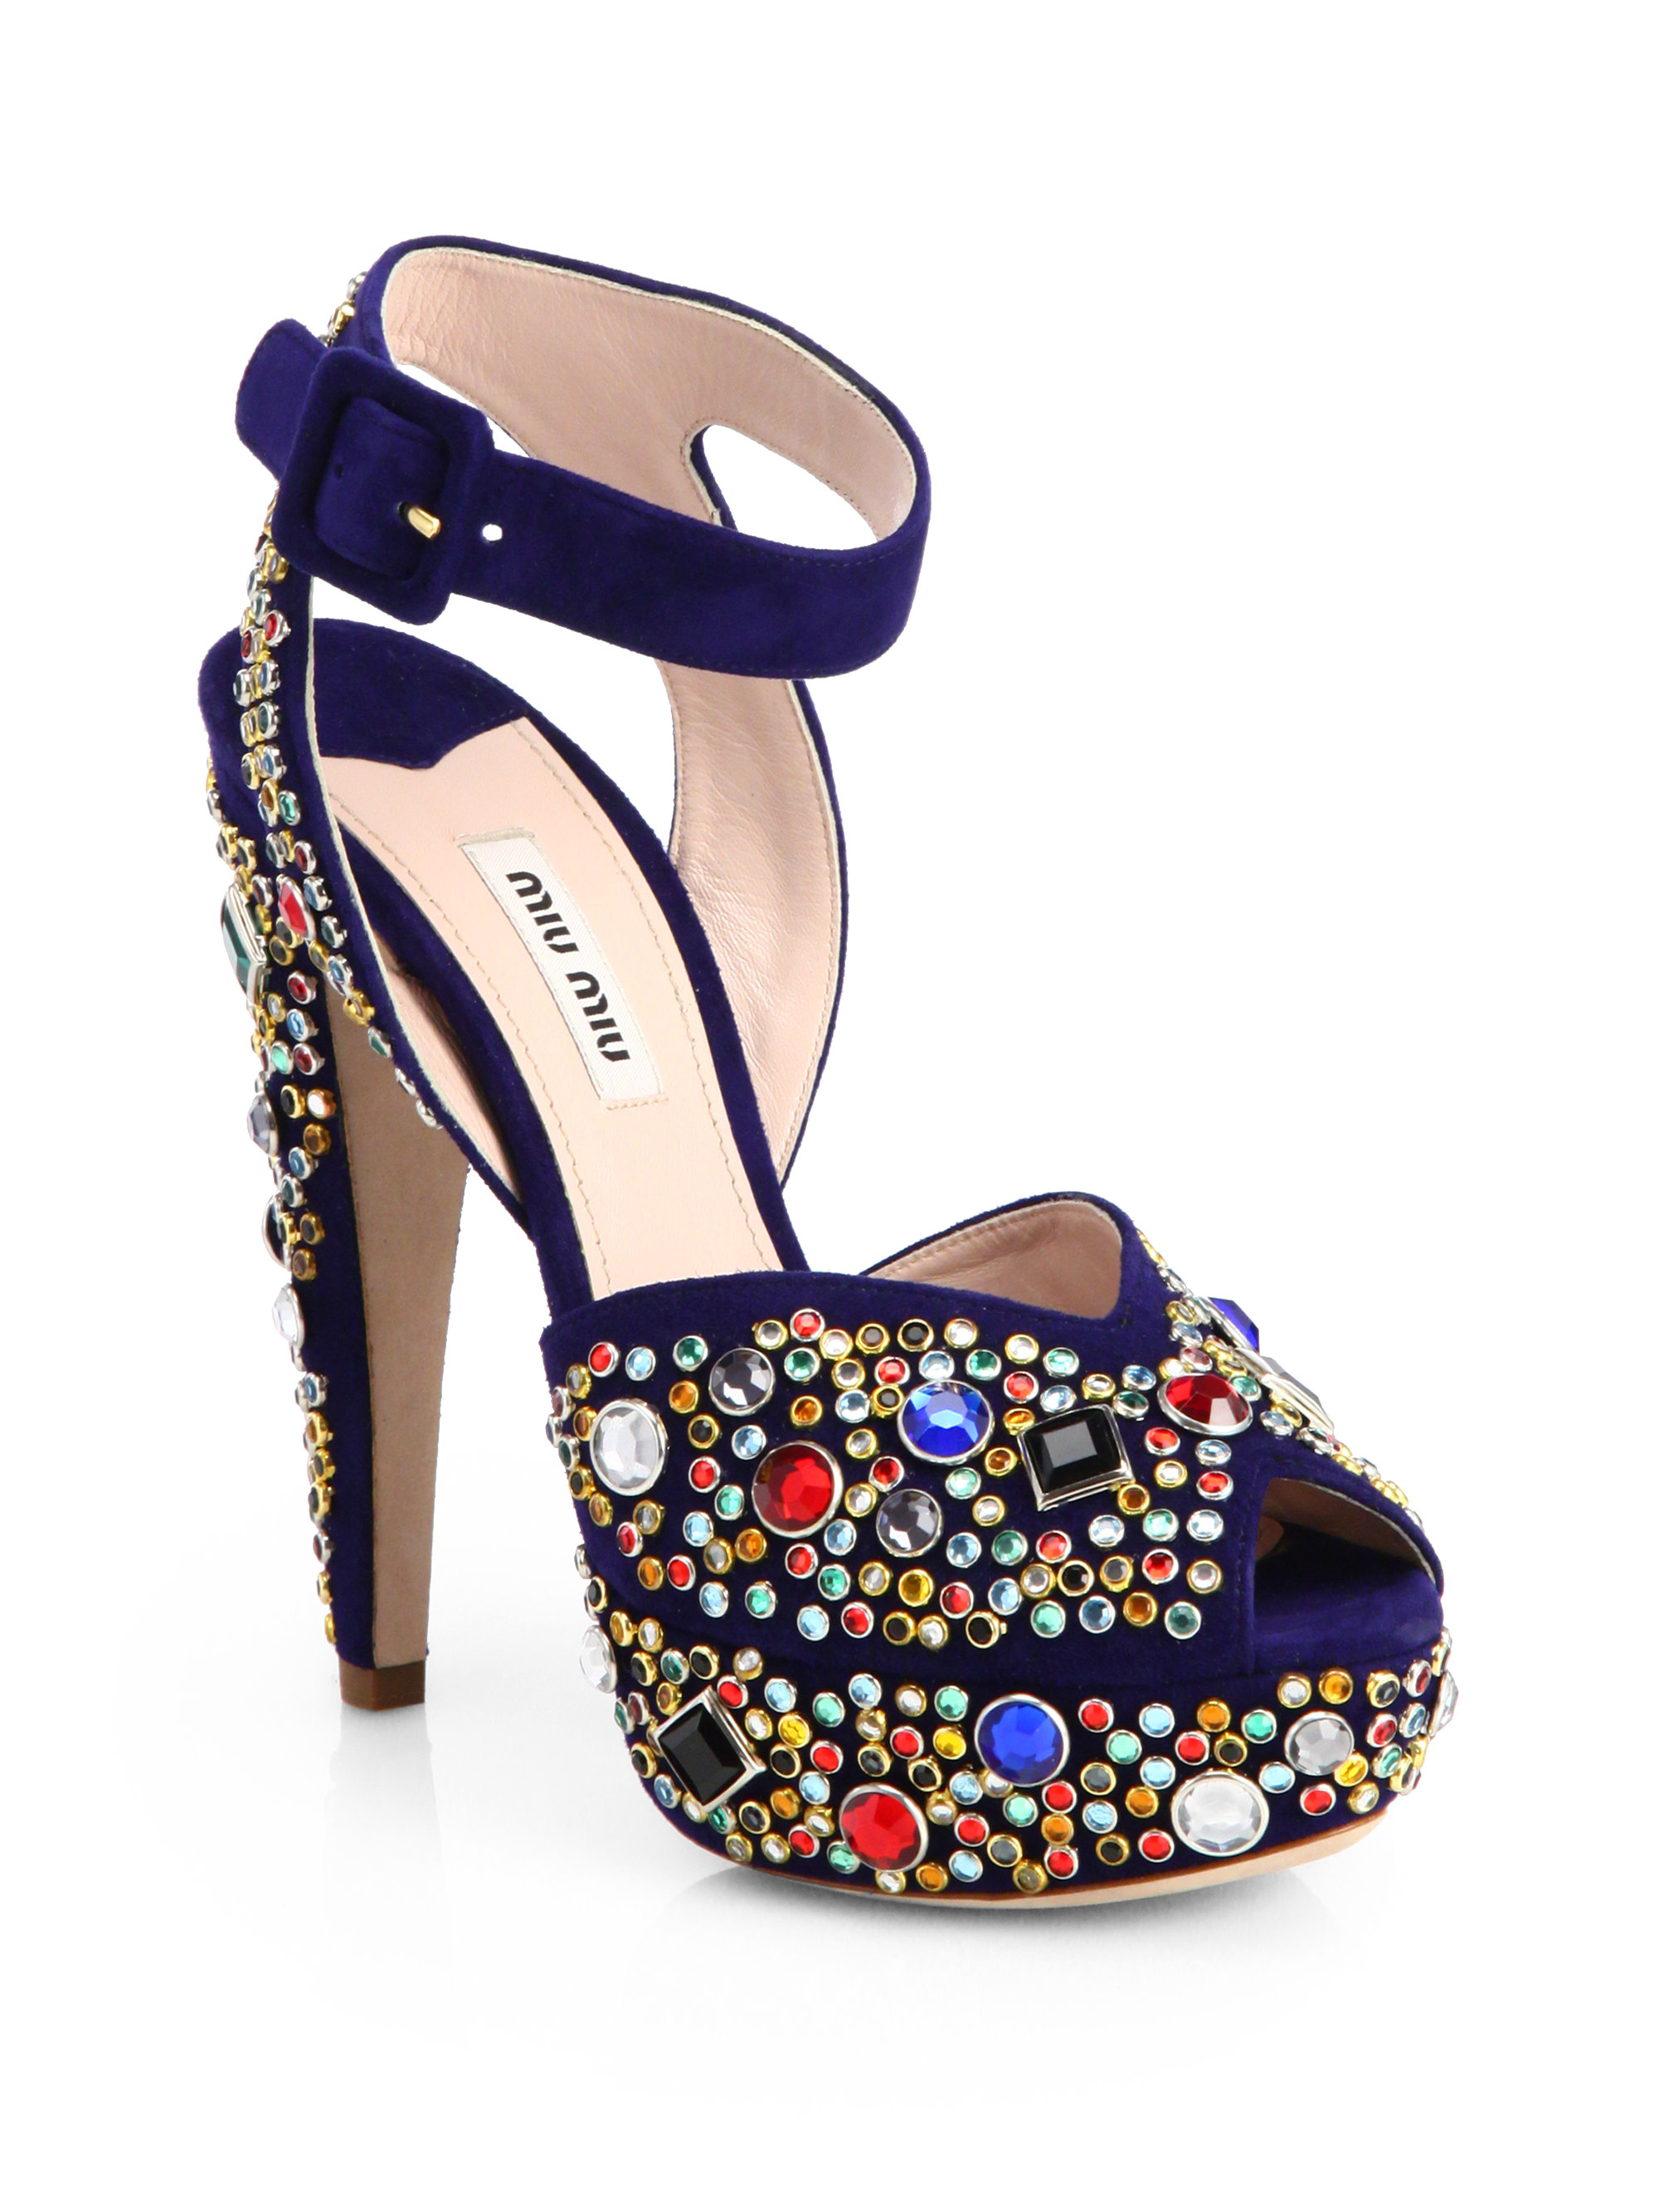 Miu Miu Donna Jeweled Suede Platform Sandals in Blue | Lyst